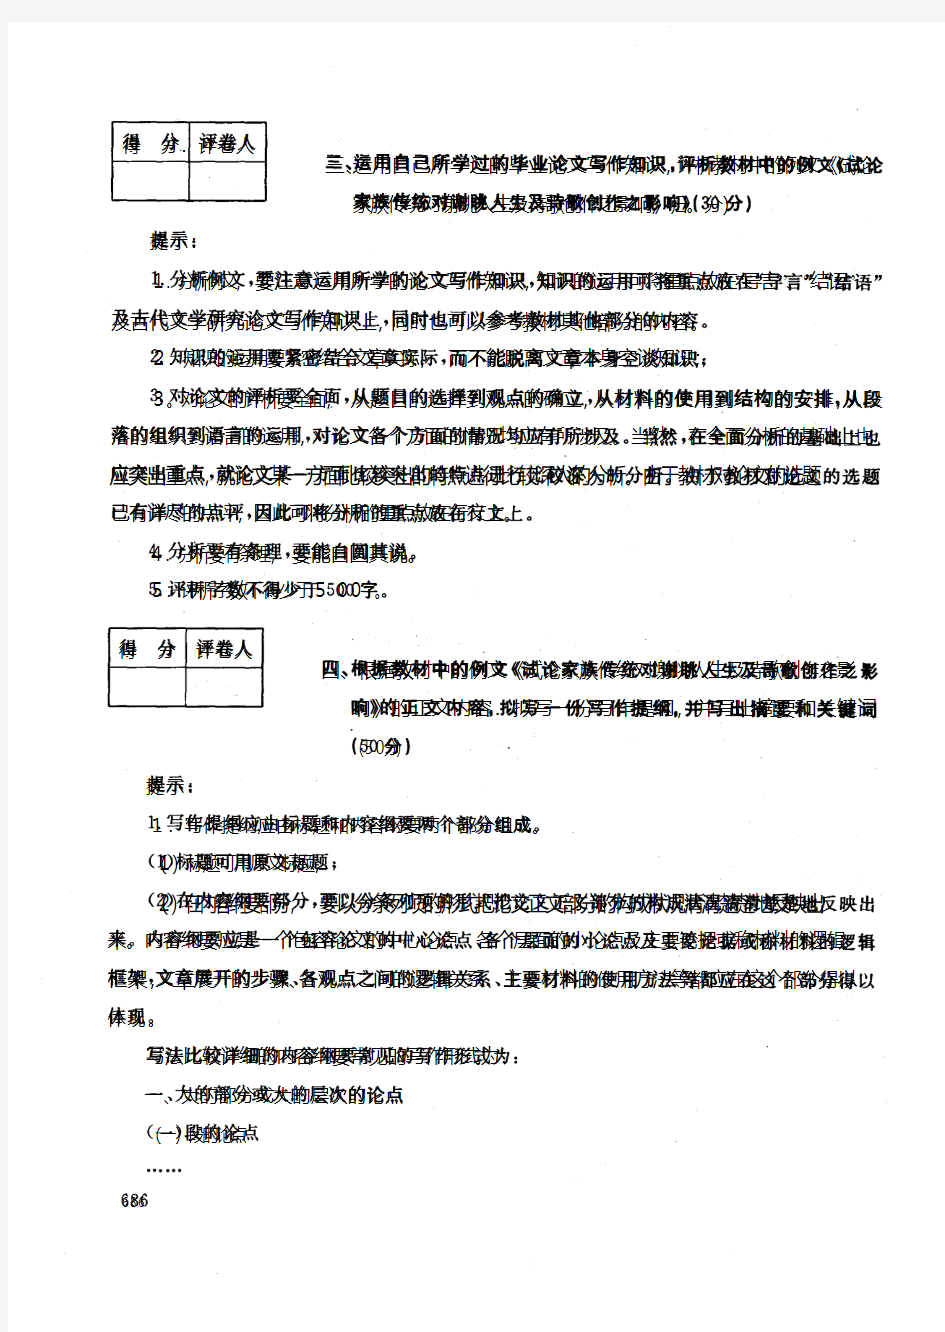 中央电大开放本科汉语言文学专业专题写作试题_1001